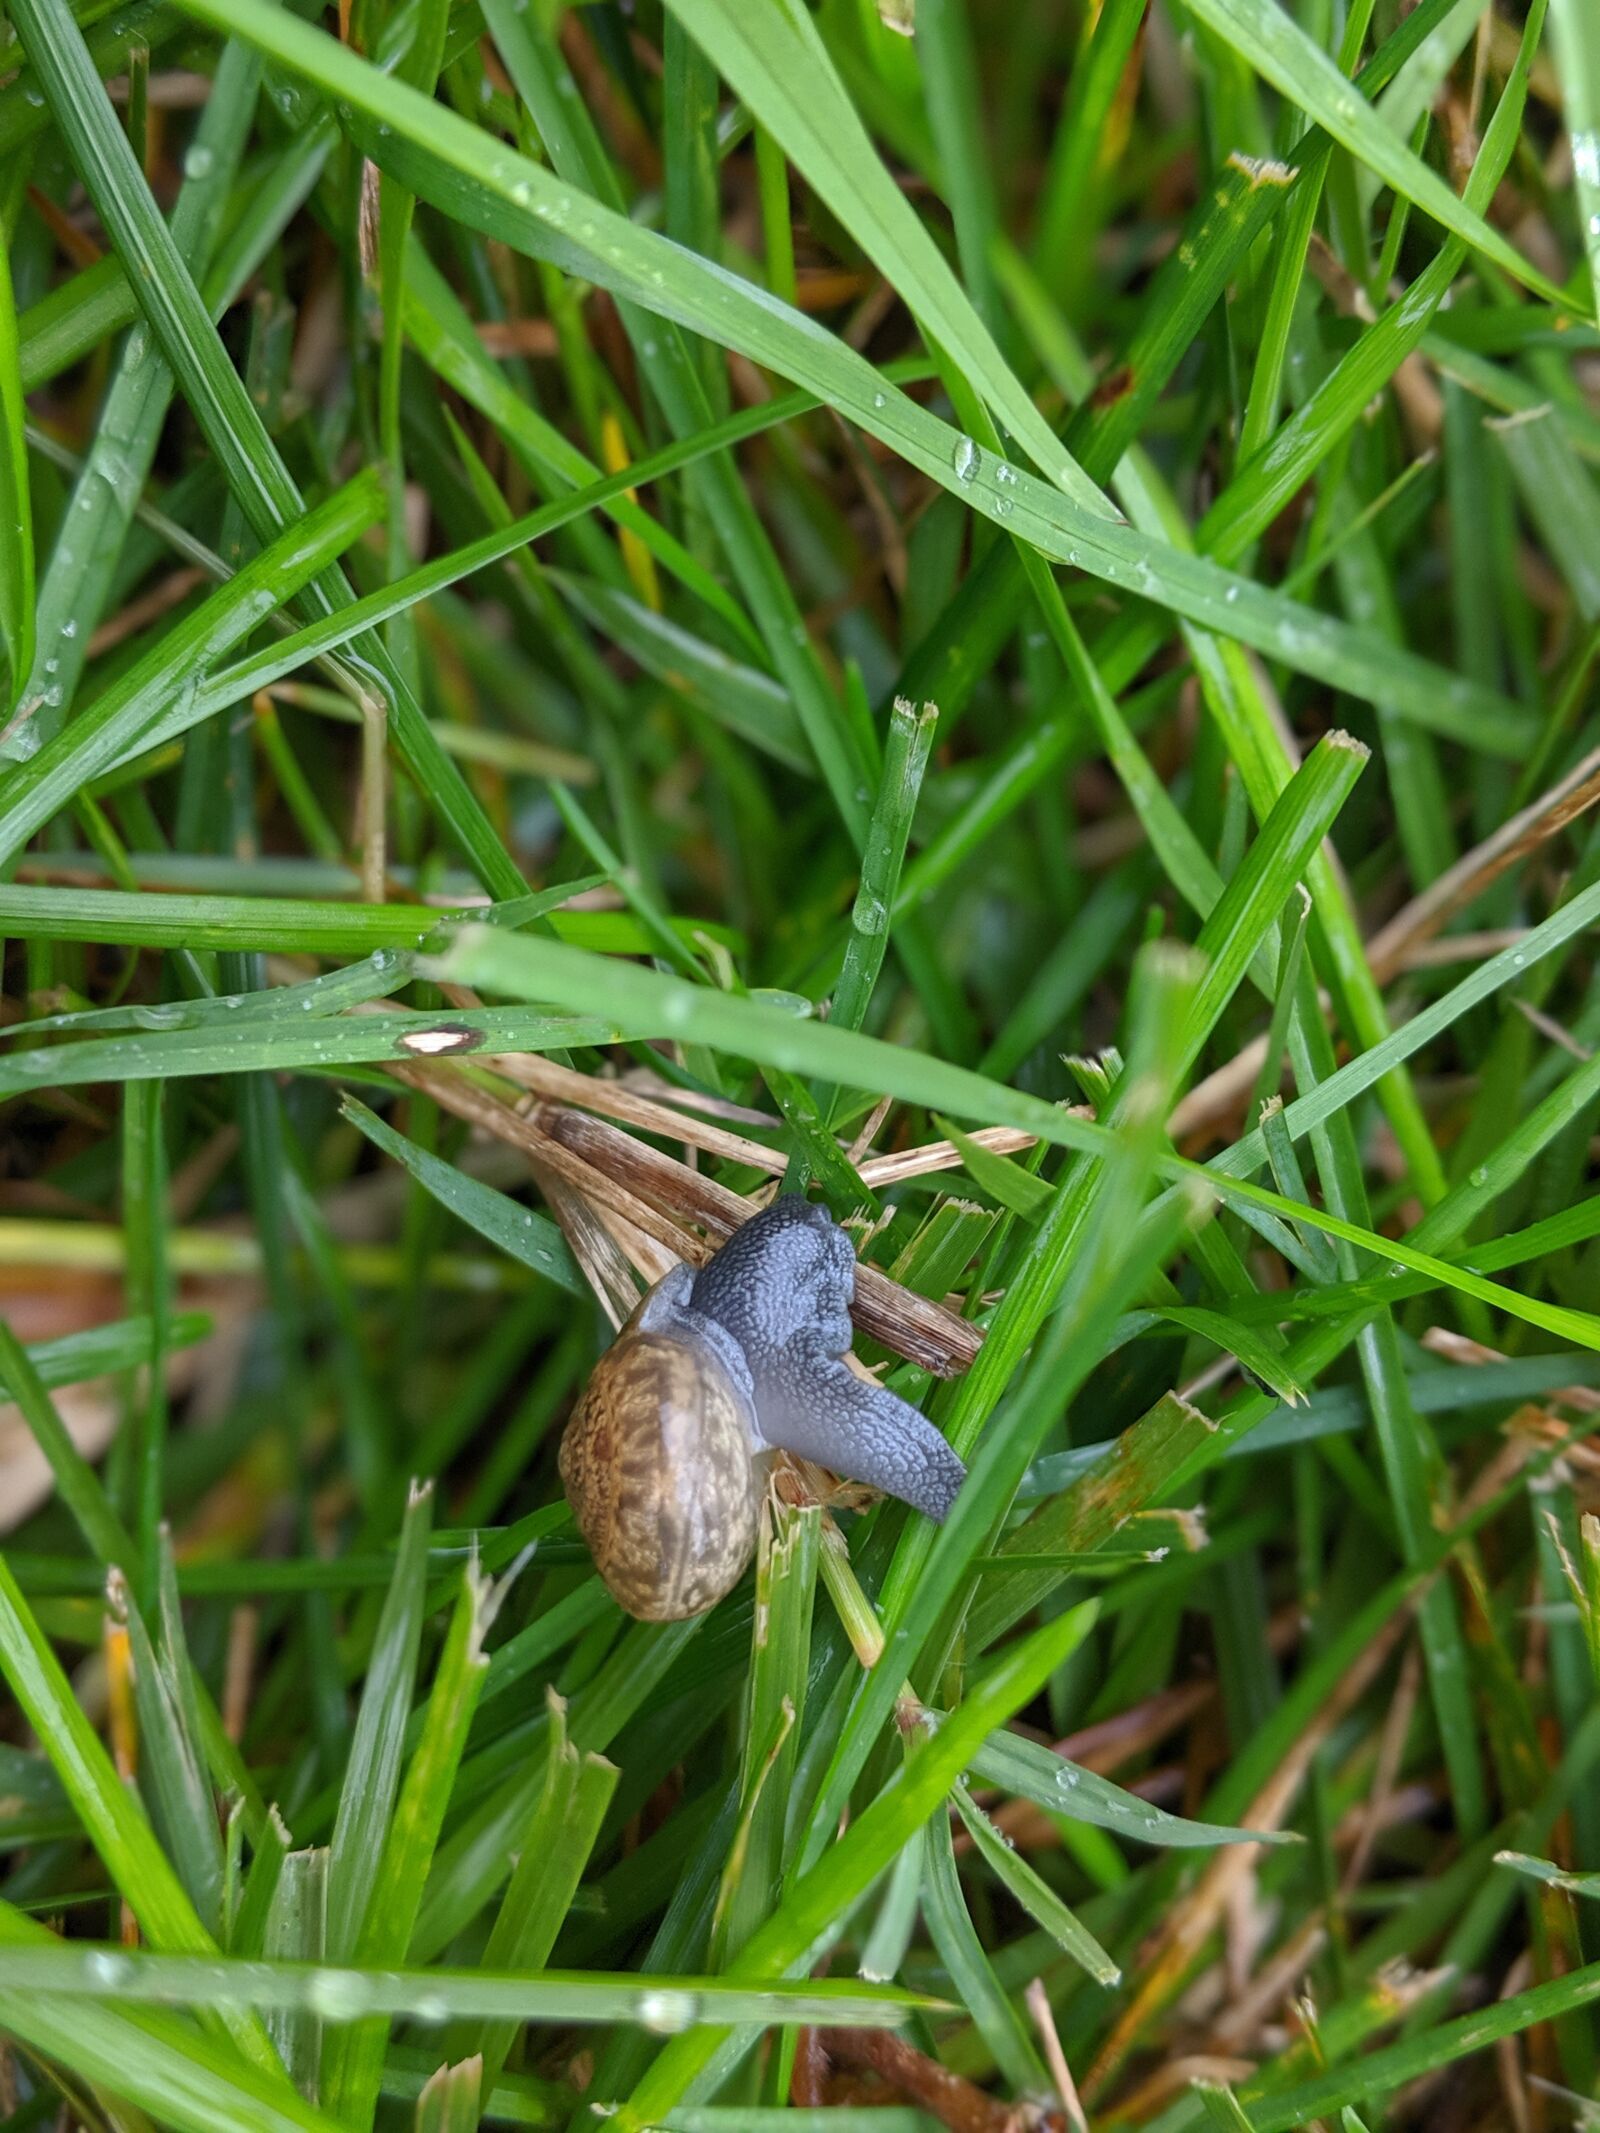 Google Pixel 2 sample photo. Snail, grass, summer photography